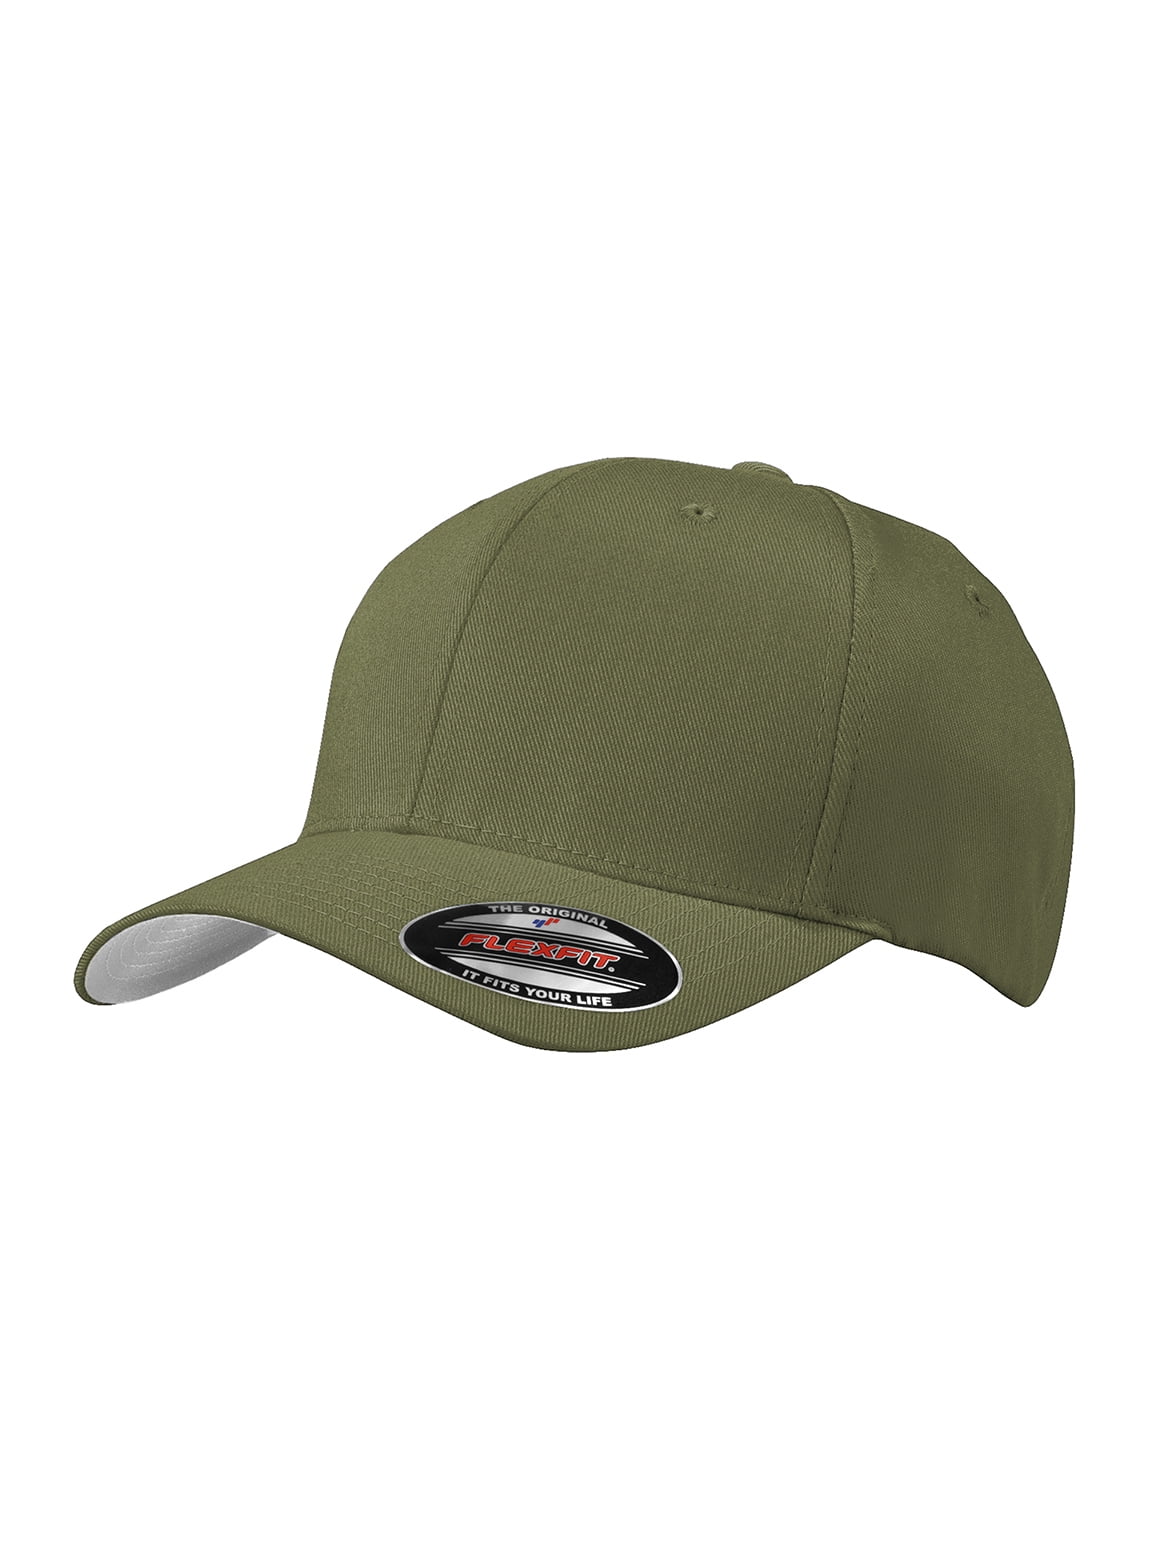 Top Headwear Baseball - Drab/Green - Olive Fit Flex Small/Medium Cap